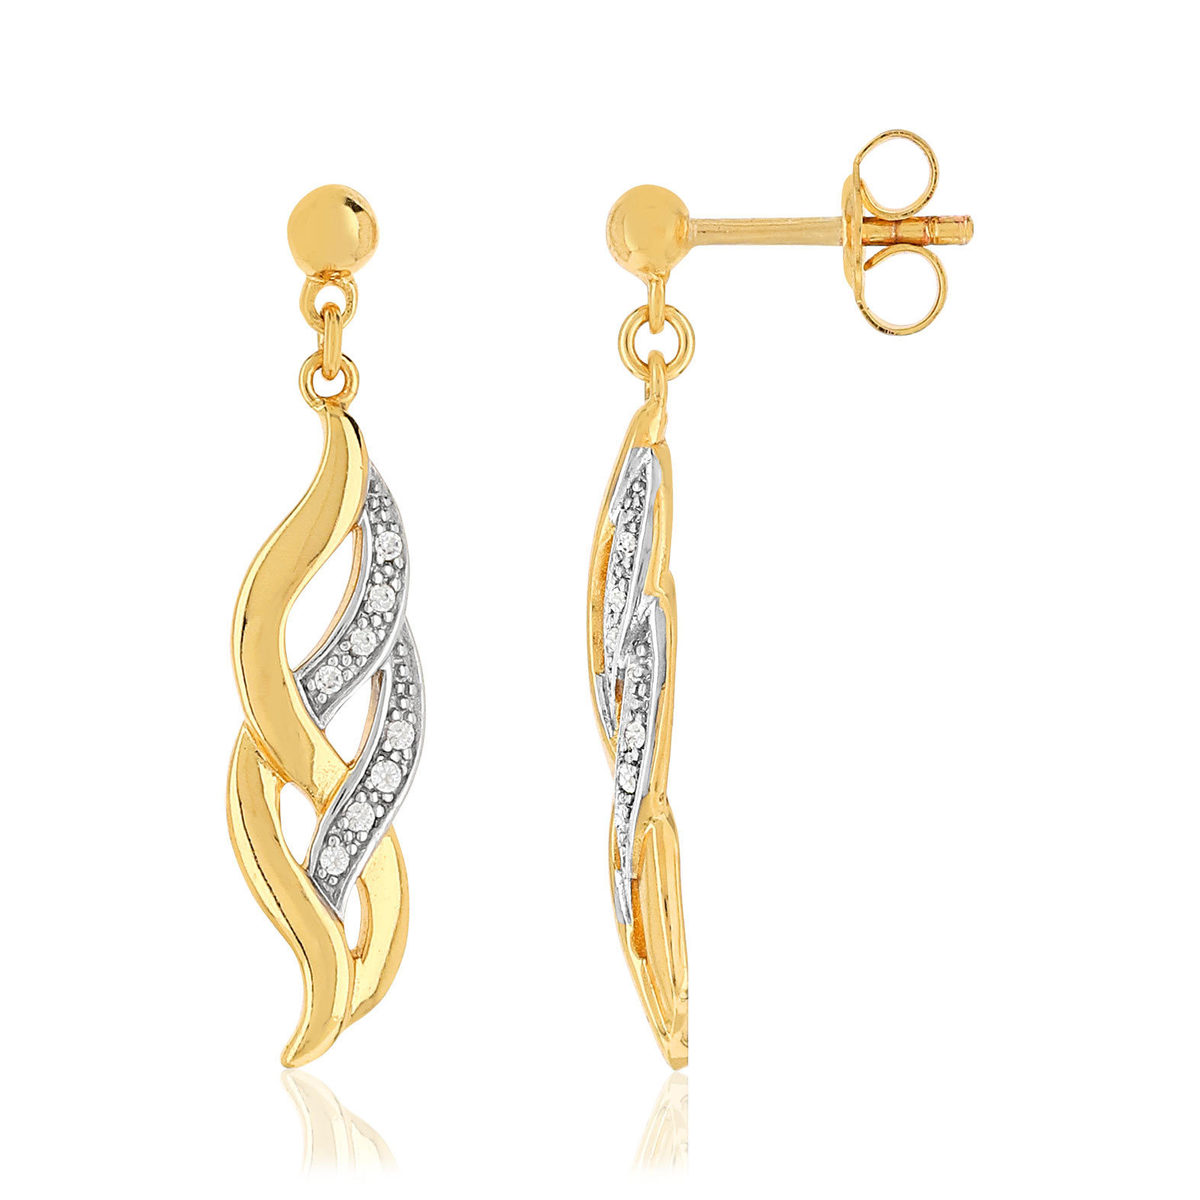 Boucles d'oreilles plaqué or pendants entrelacées zirconias